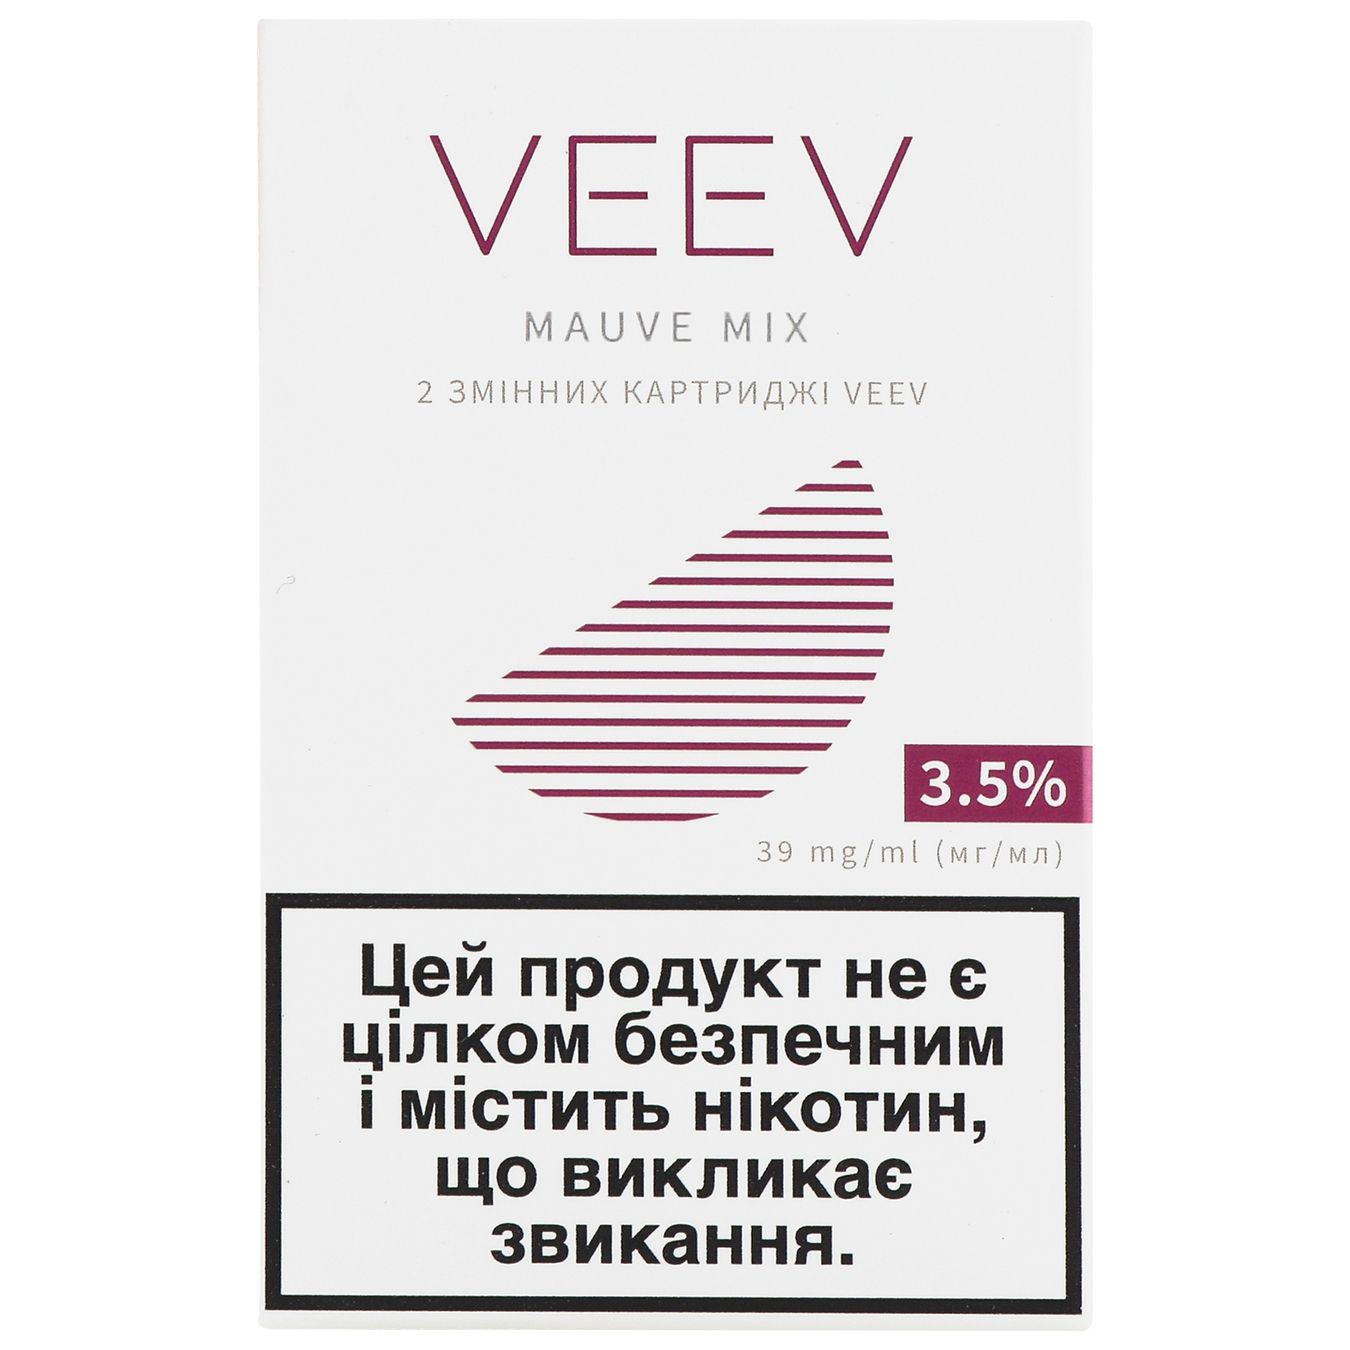 Картридж змінний Veev Mauve mix 3,5% (ціна вказана без акцизу)